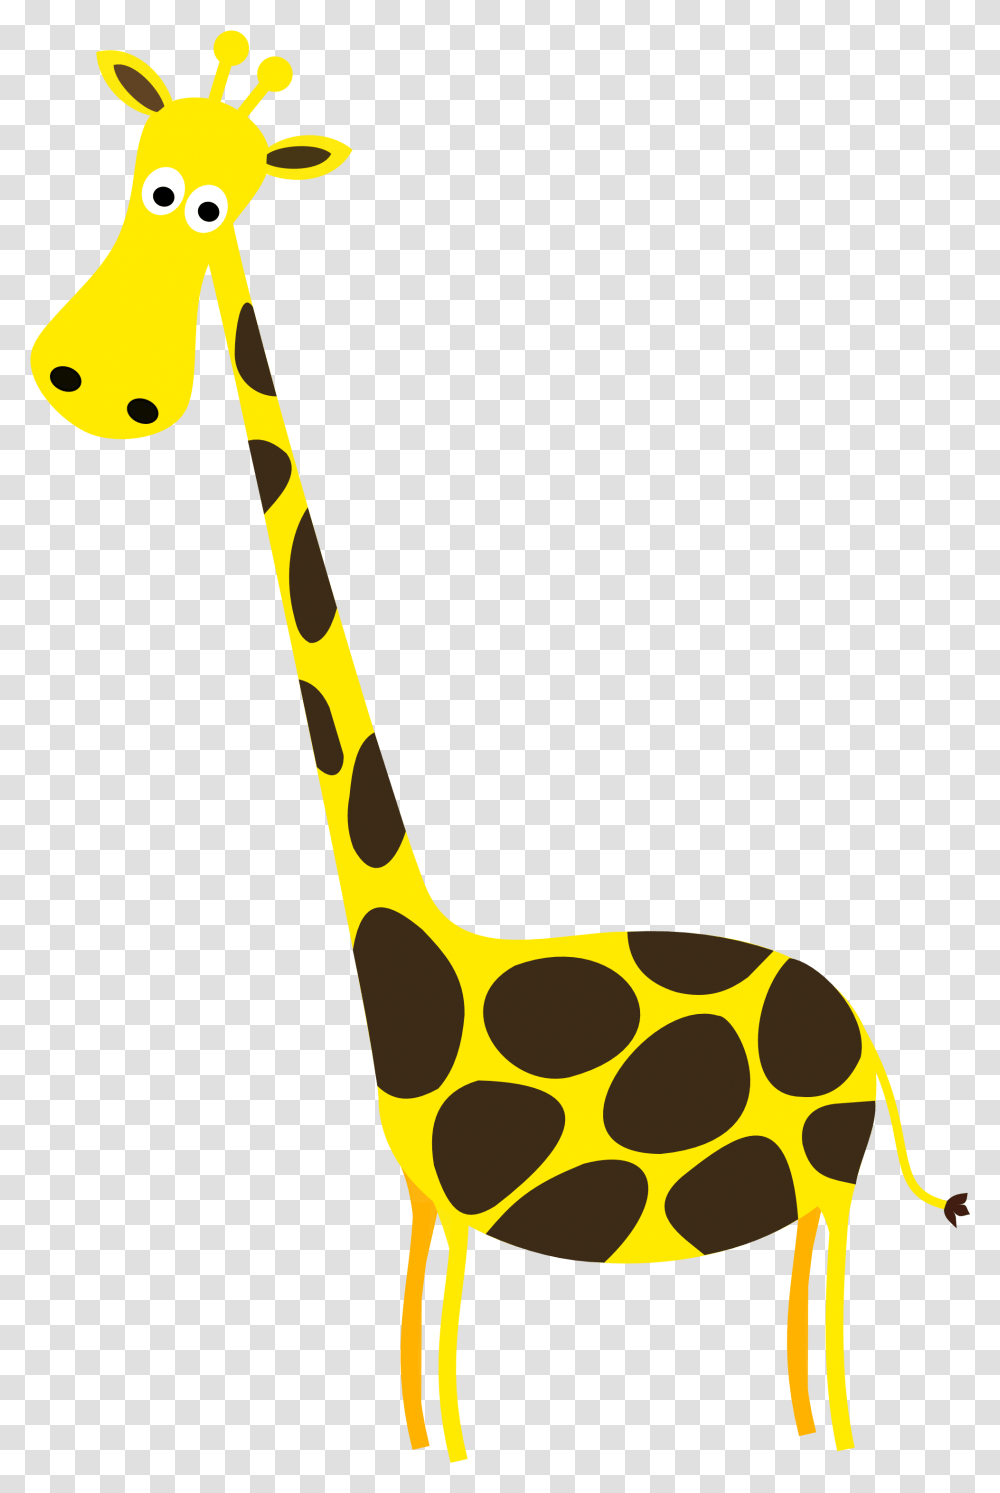 Giraffe Images Giraffe Clipart Background, Sport, Sports, Golf, Golf Club Transparent Png